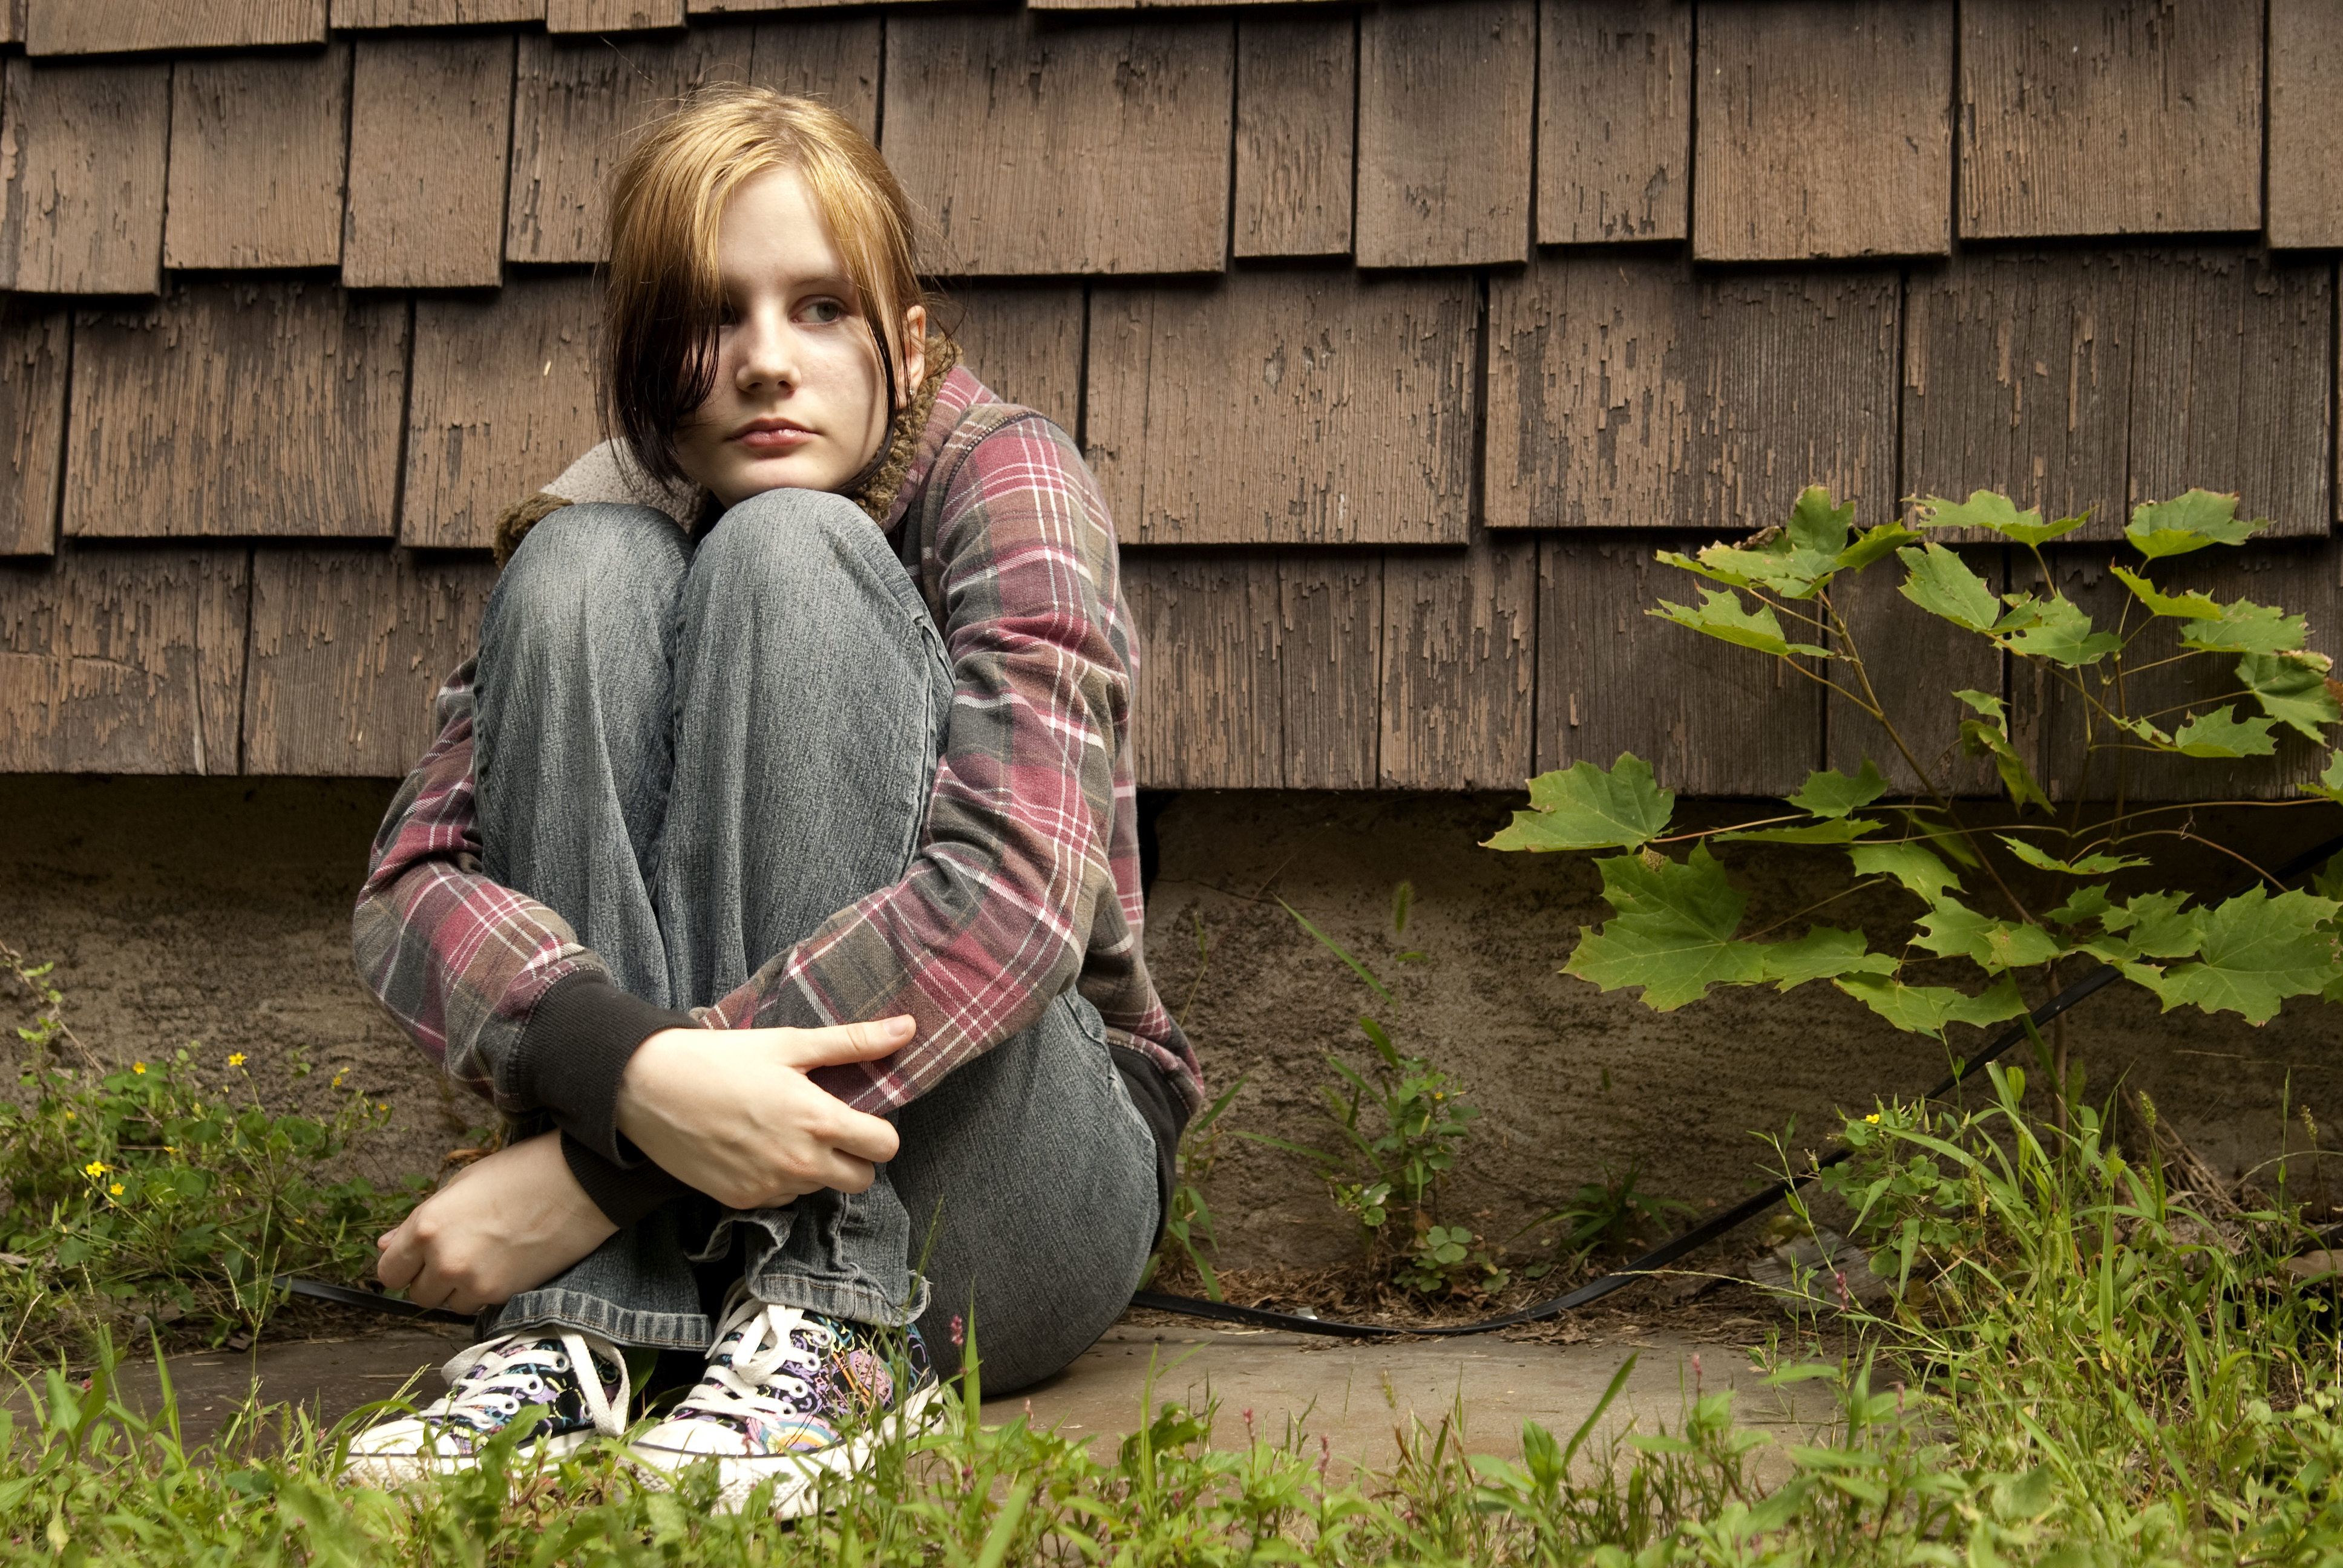 Ein trauriges Mädchen sitzt auf dem Boden | Quelle: Shutterstock